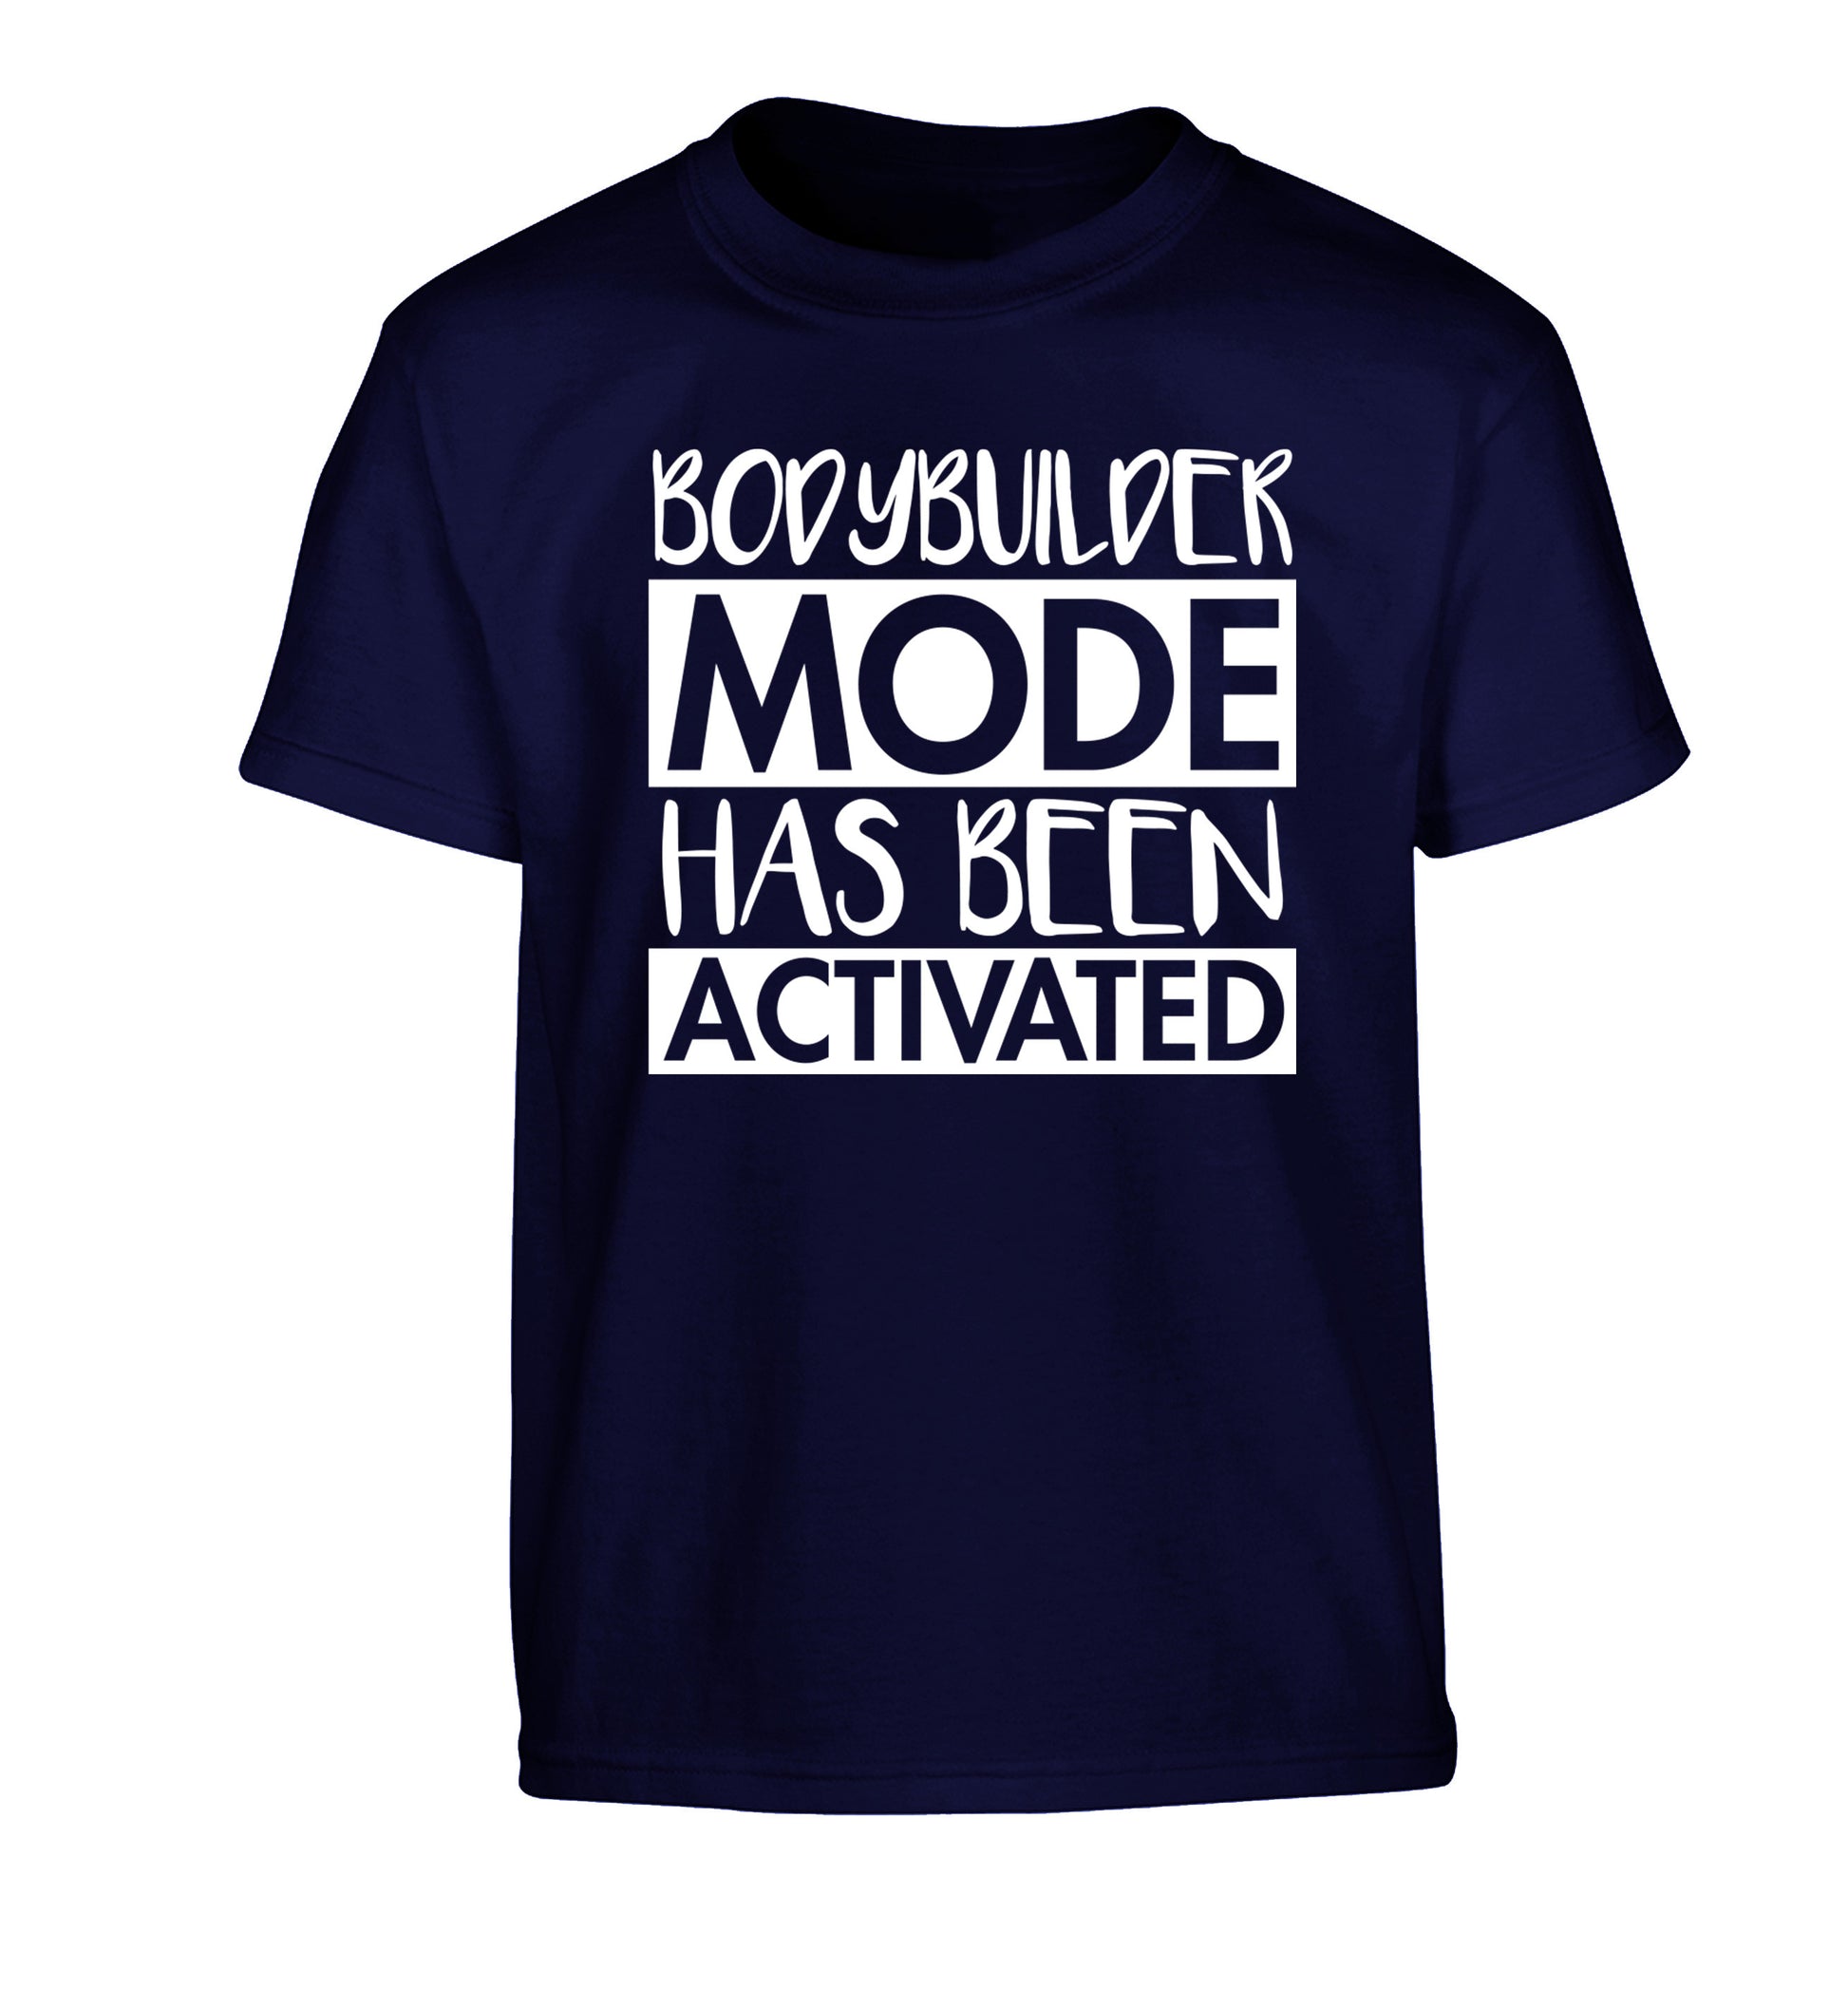 Bodybuilder mode activated Children's navy Tshirt 12-14 Years